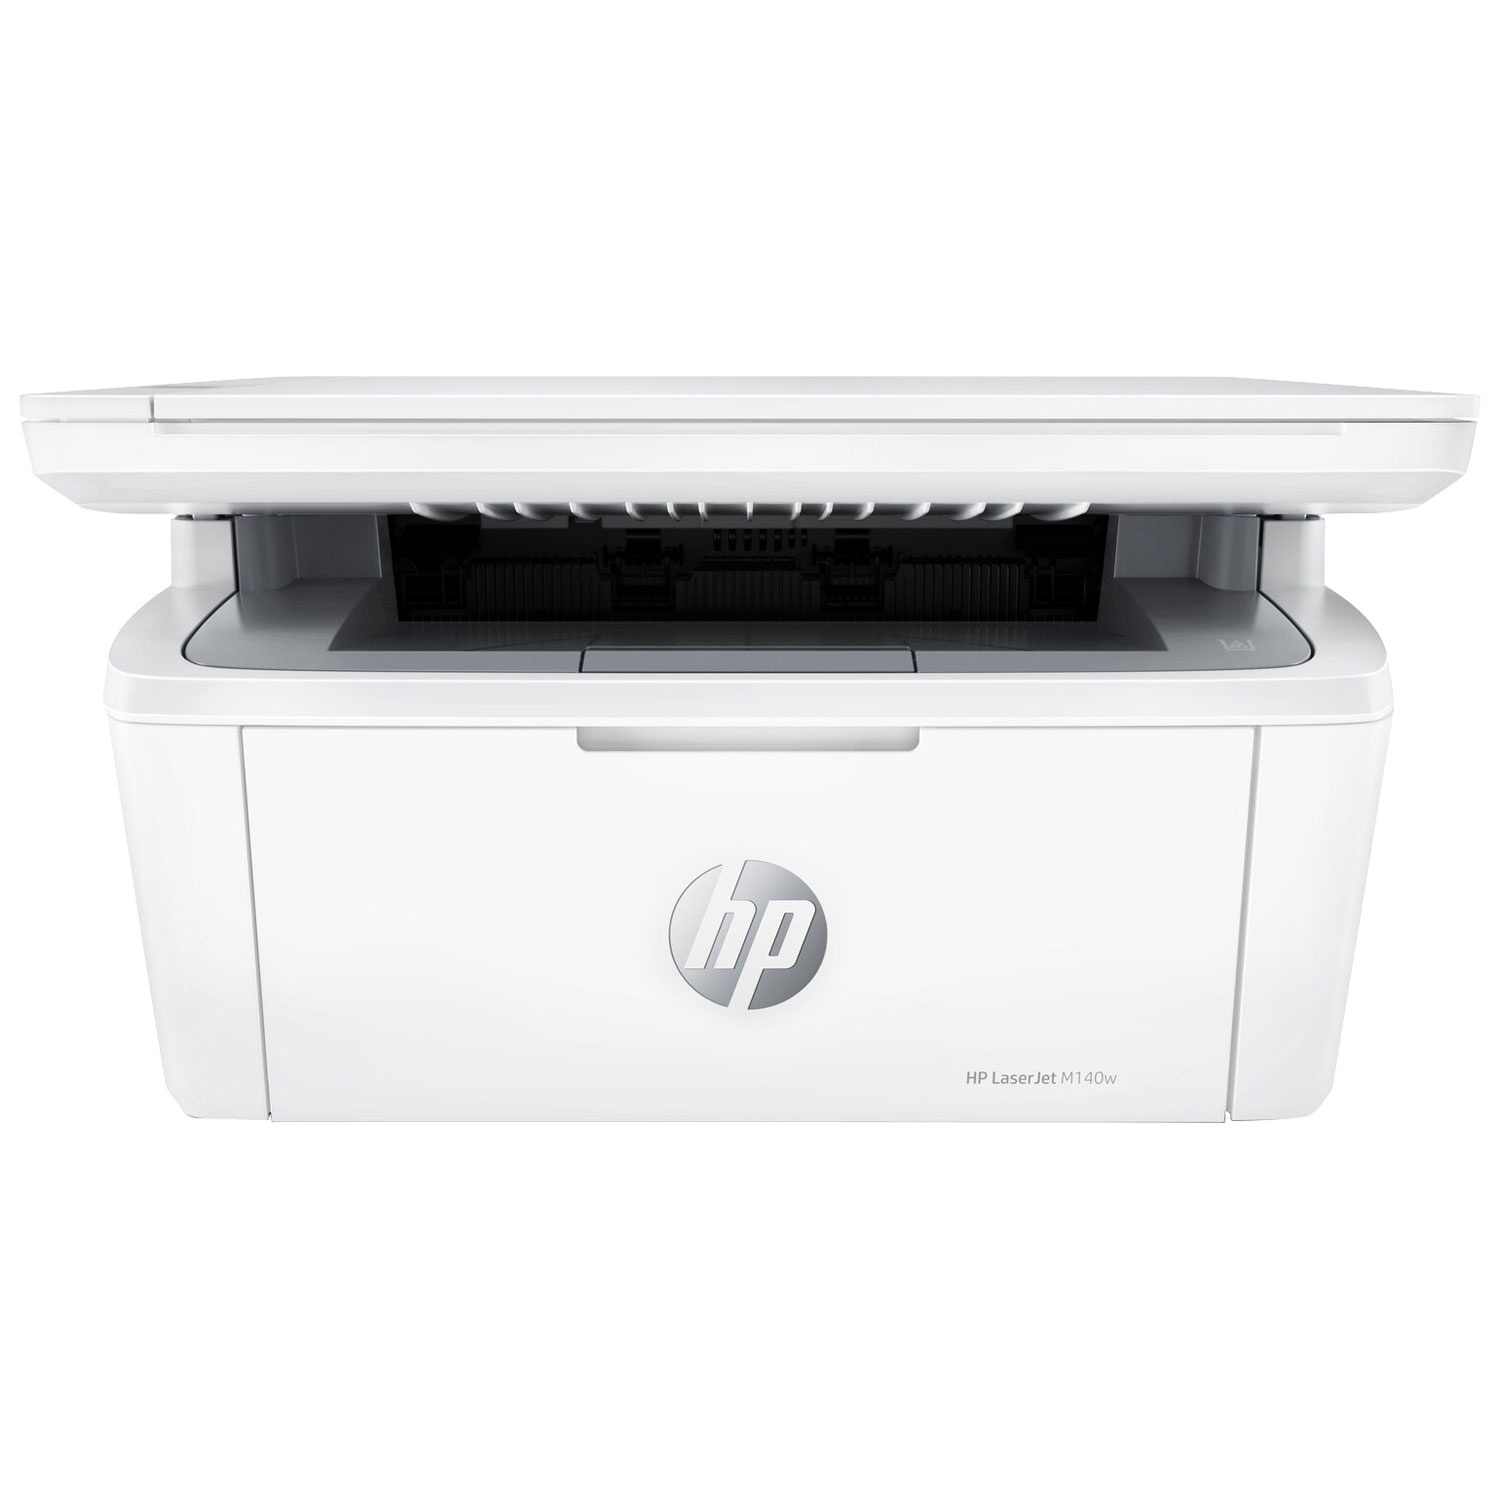 HP LaserJet M140w Monochrome Wireless All-In-One Laser Printer